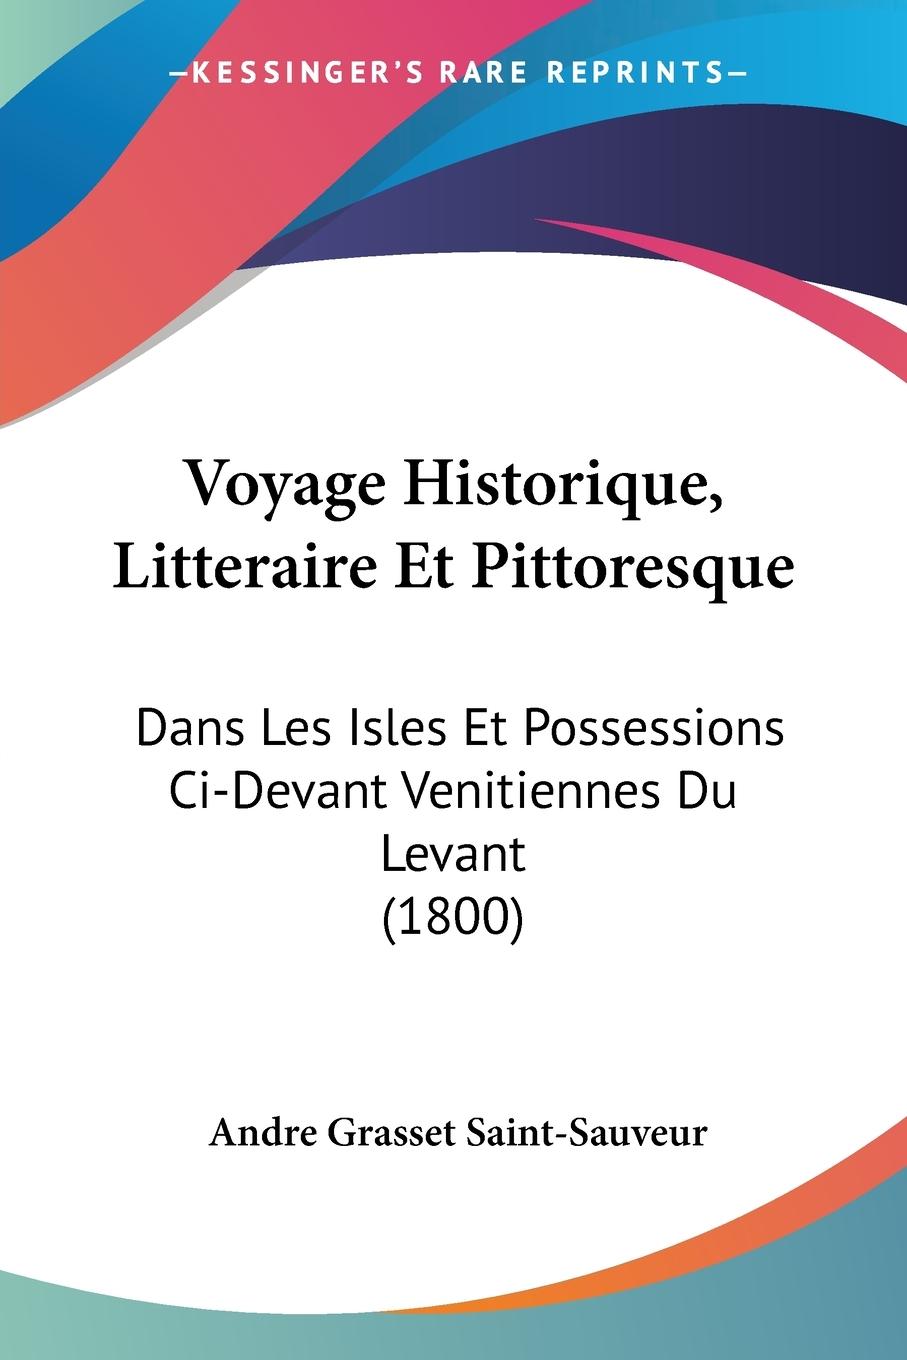 Voyage Historique, Litteraire Et Pittoresque - Saint-Sauveur, Andre Grasset